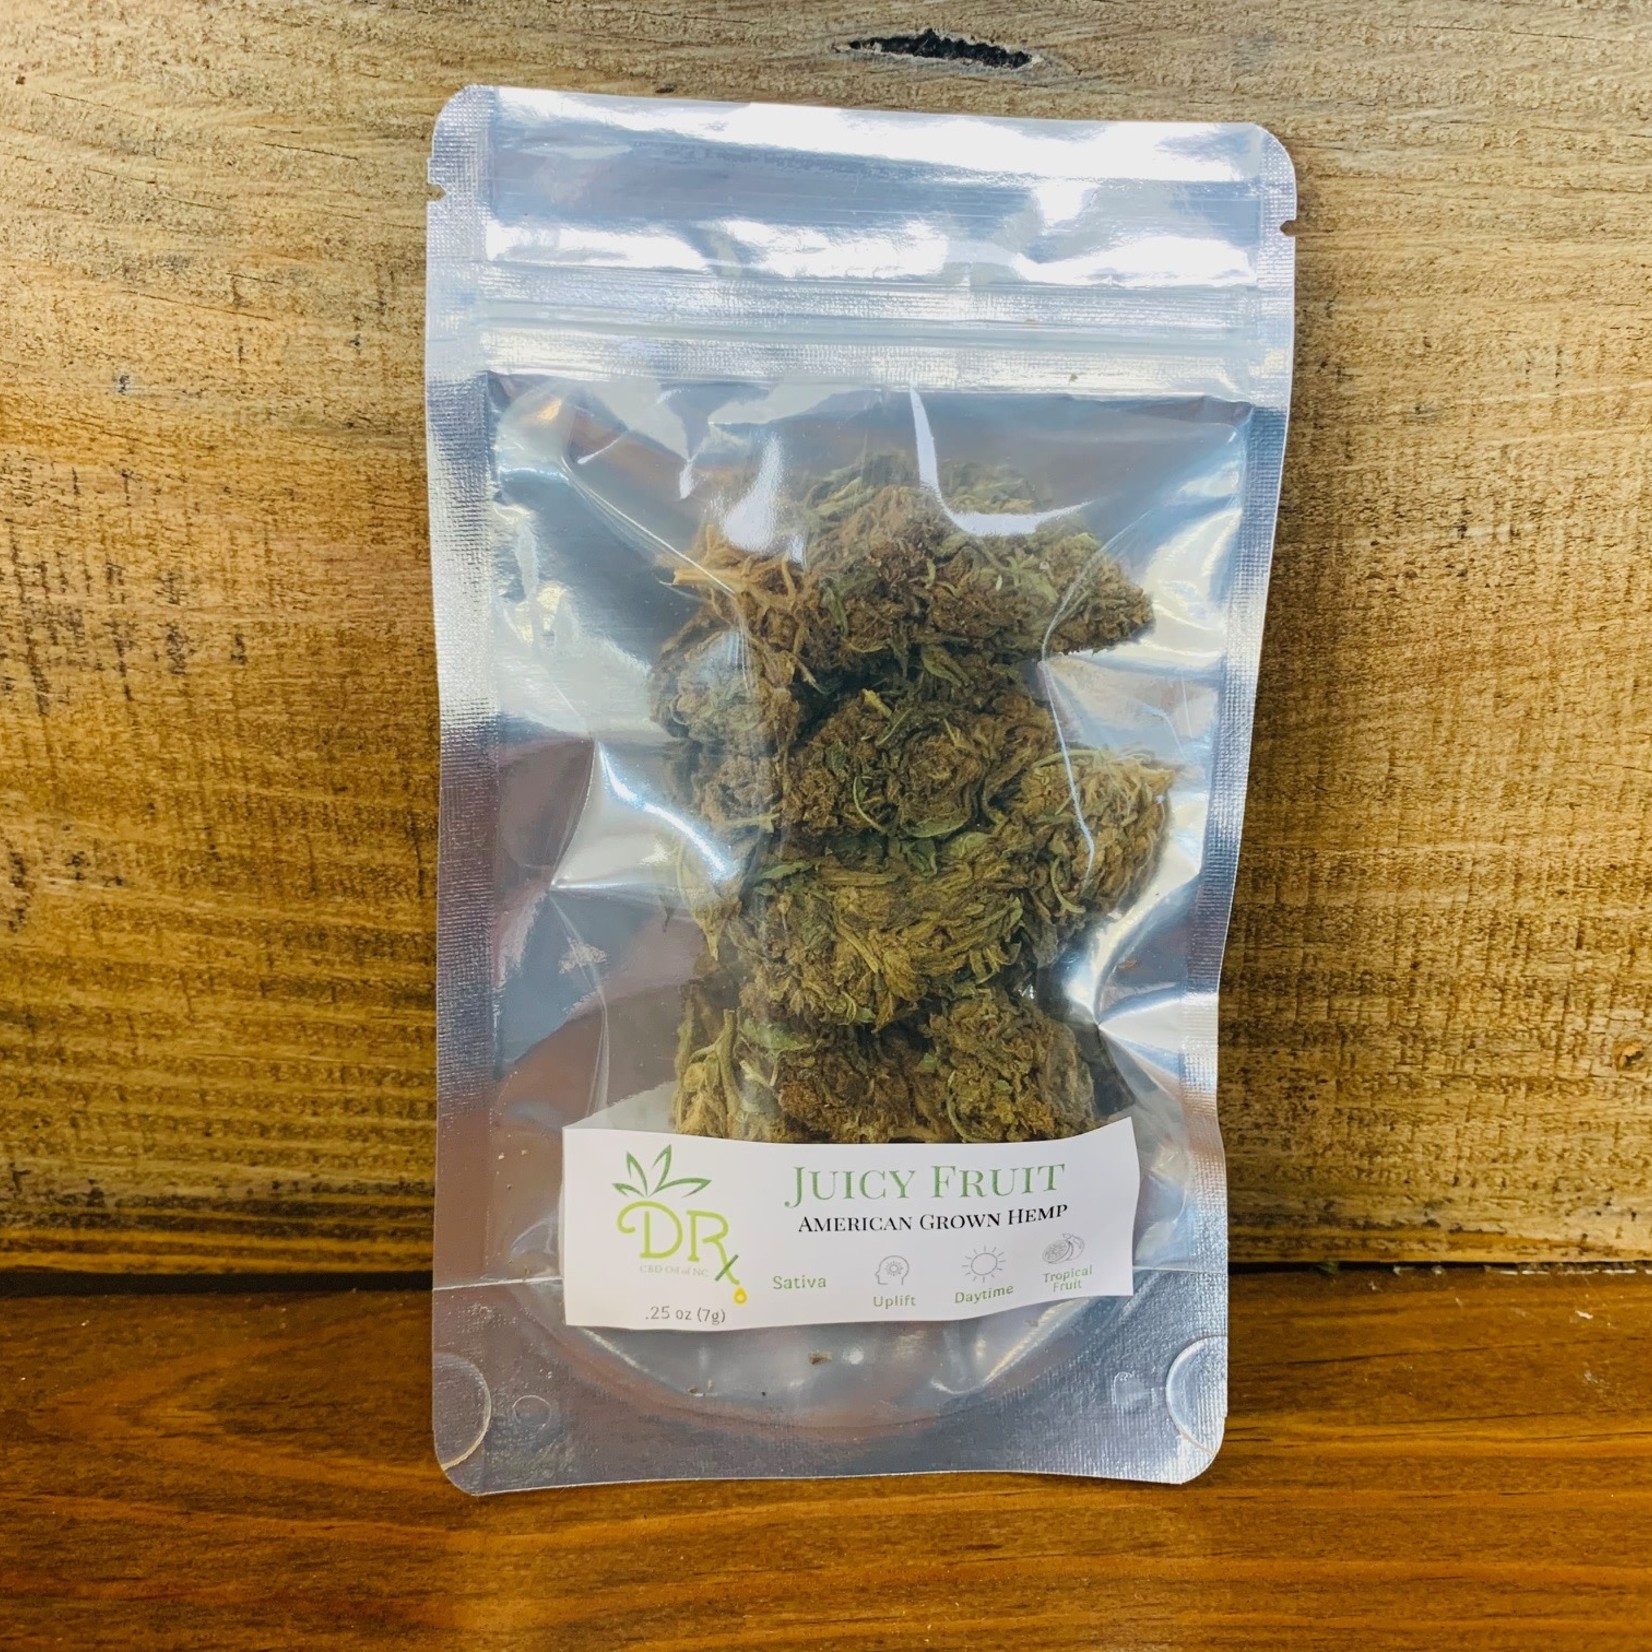 DRx Smoke Hemp - .25 ounce - Juicy Fruit